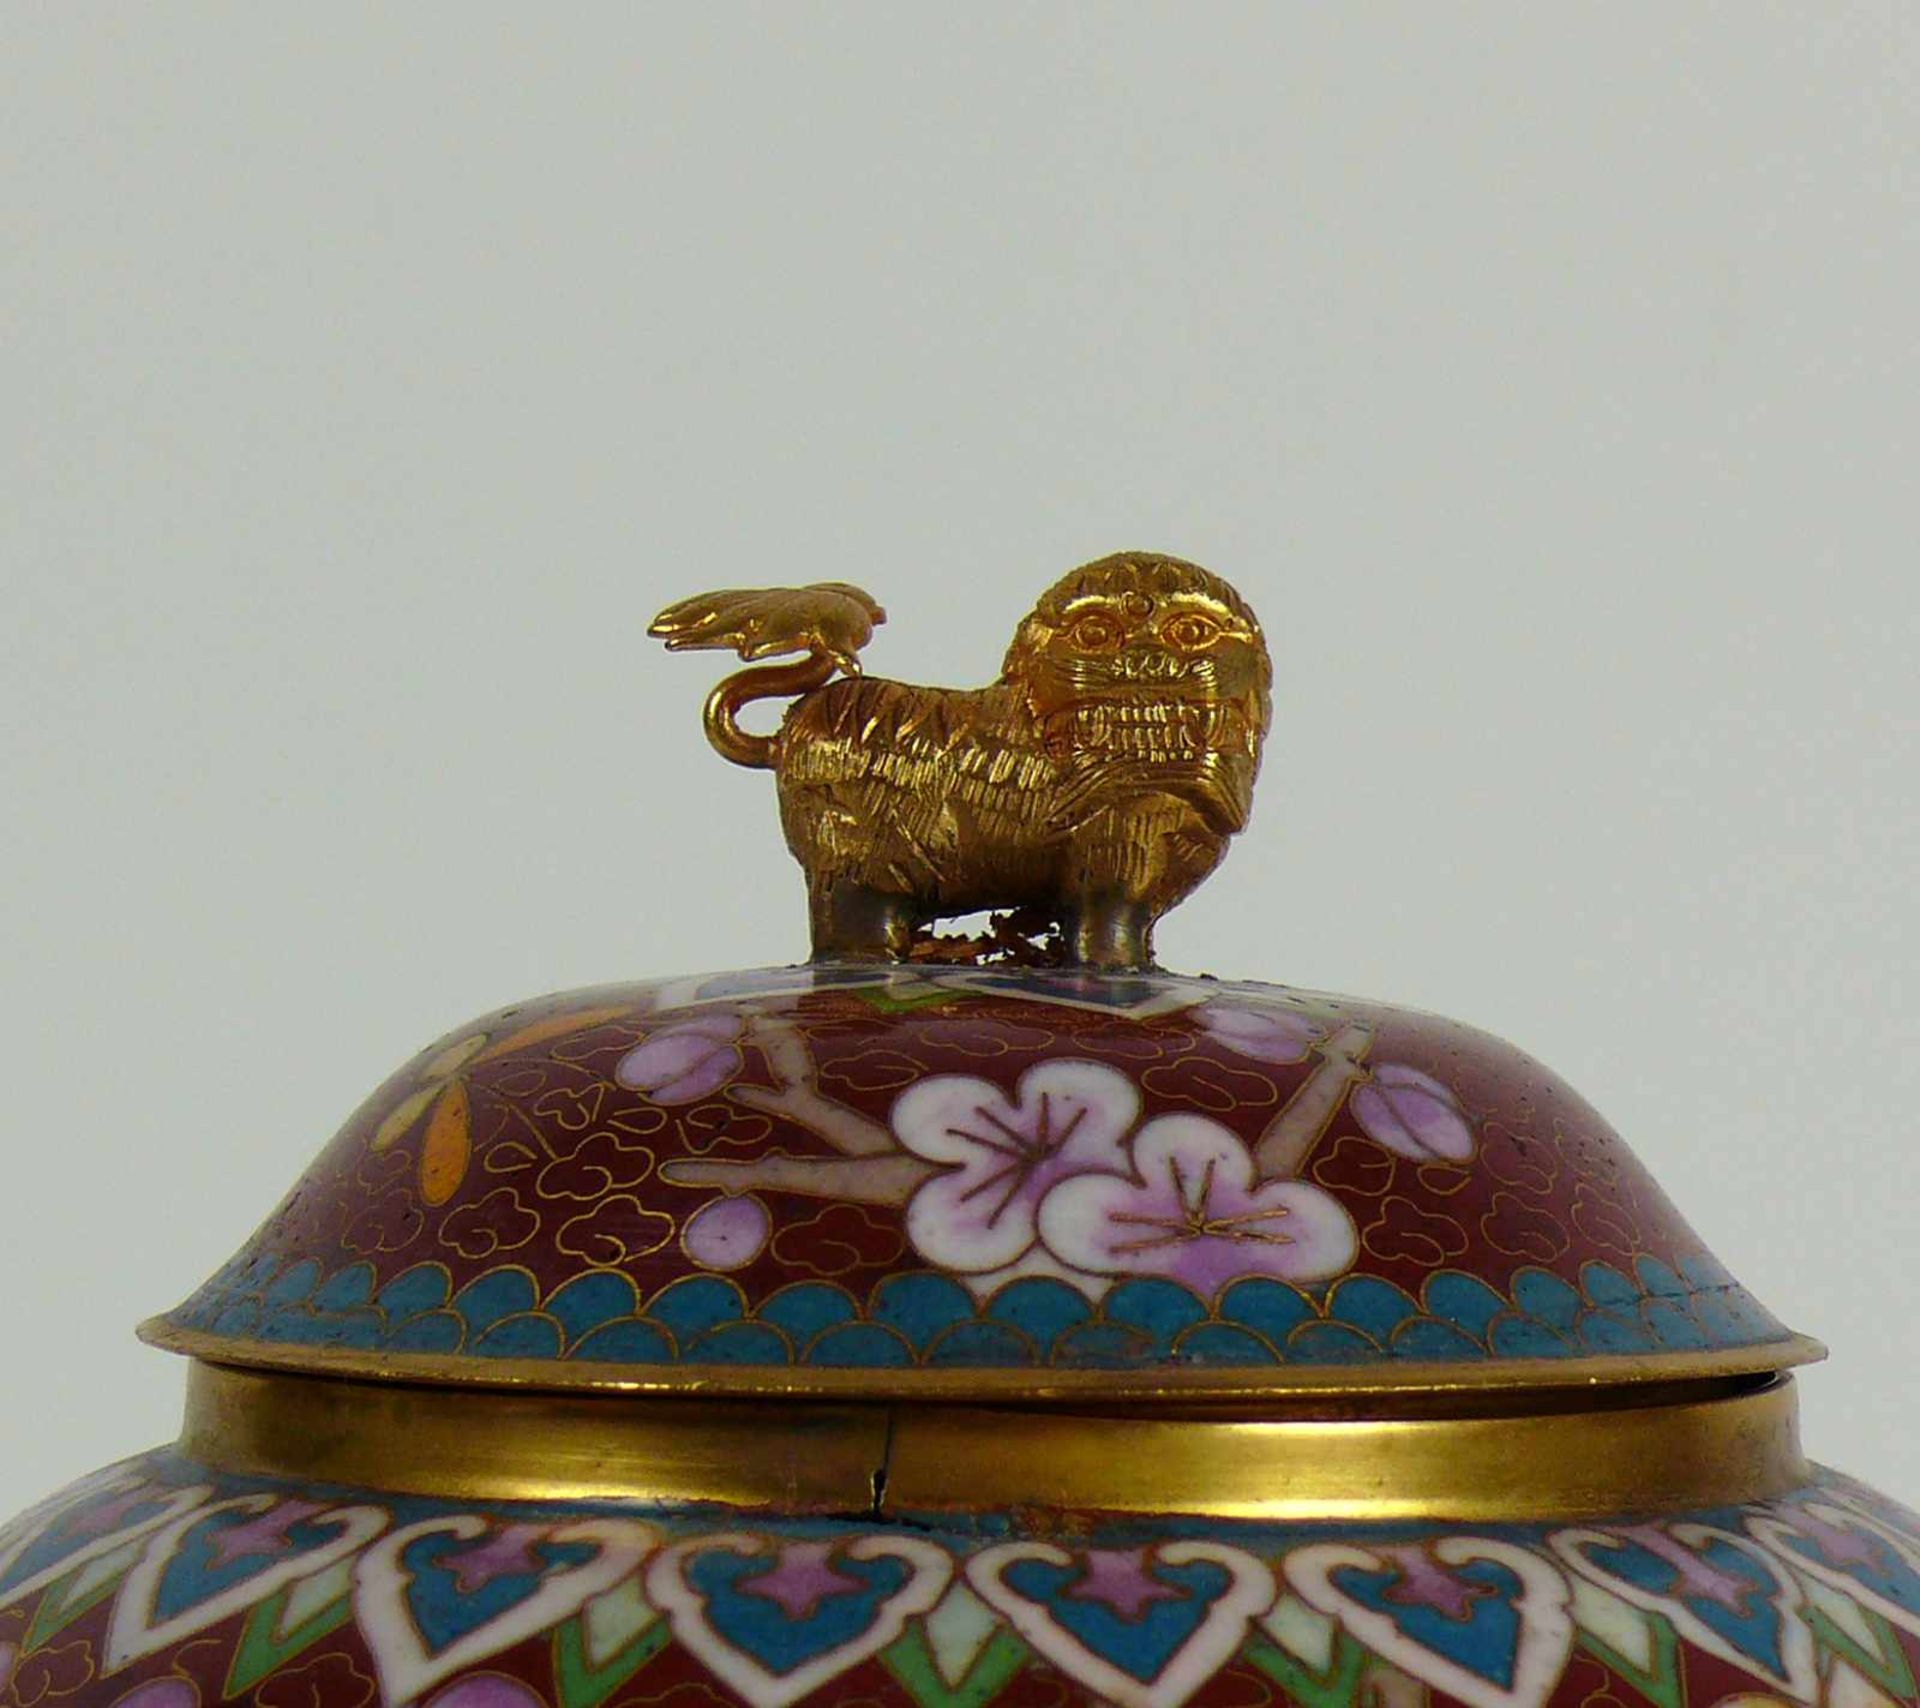 Cloisonné-Deckelvase (20.Jh.) runde Form mit gewölbtem Deckel; dieser mit Nodus in Form eines Fo- - Bild 2 aus 4